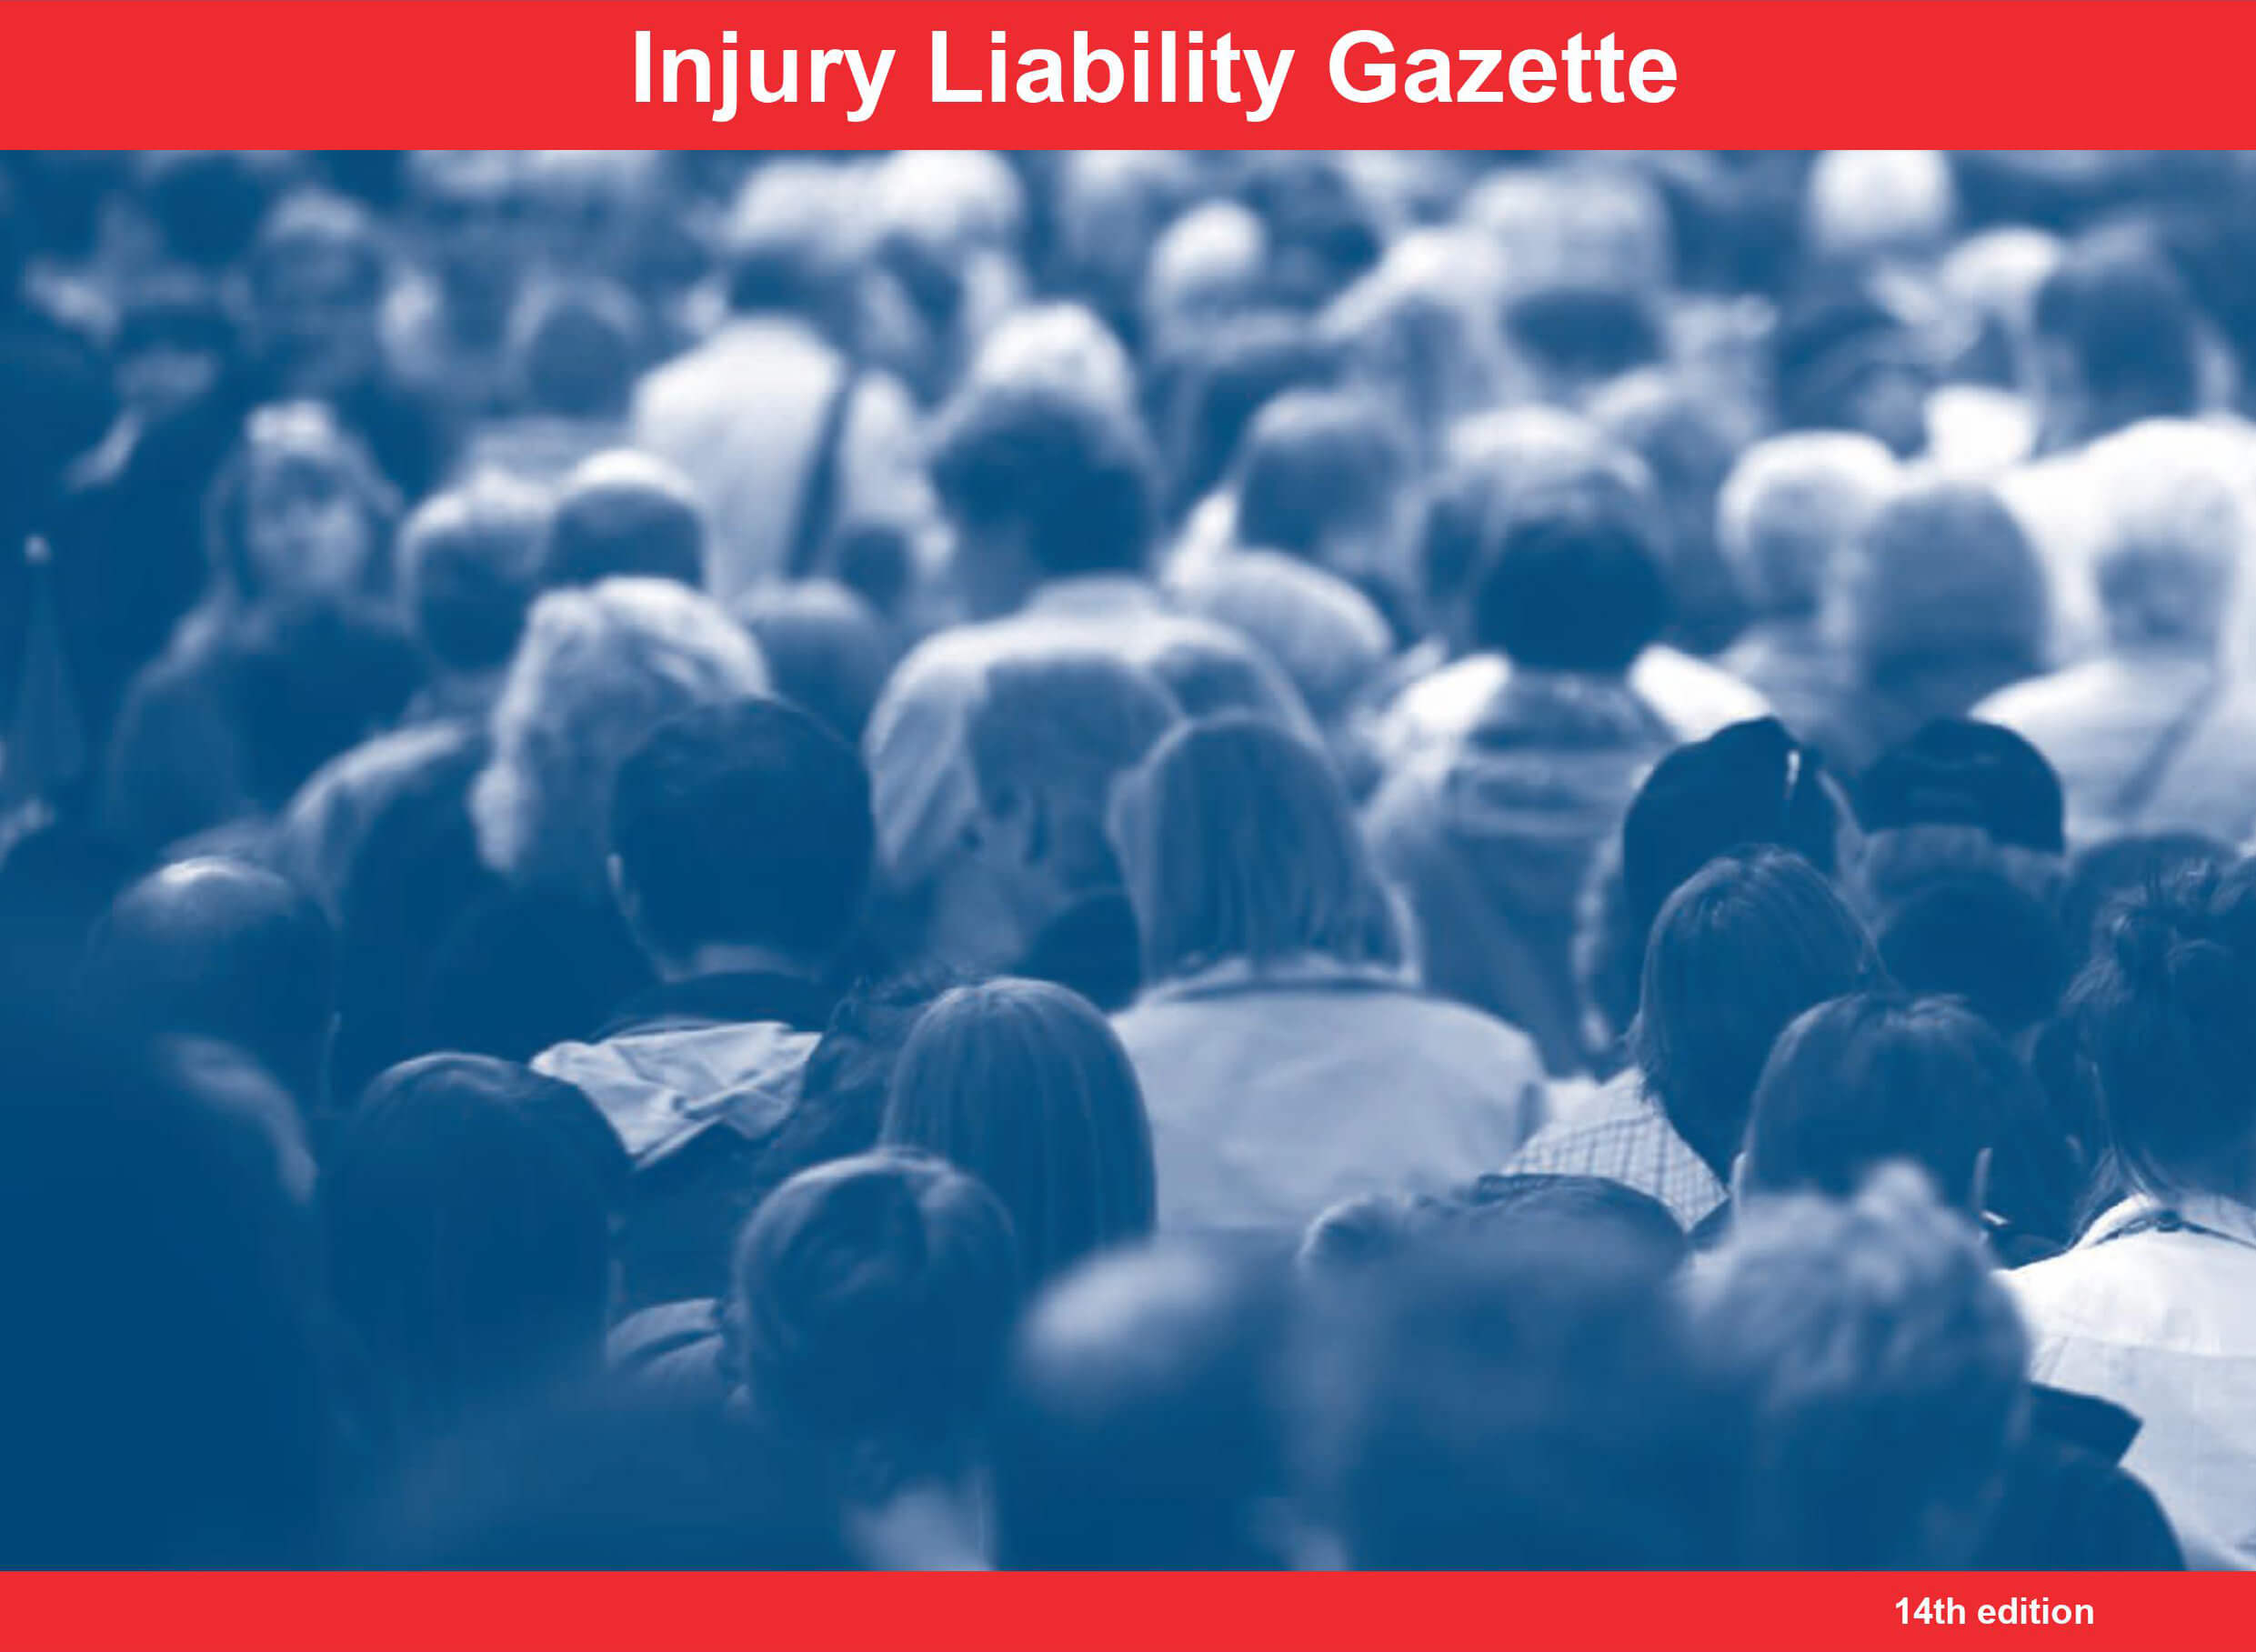 Injury Liability Gazette (14th edition)